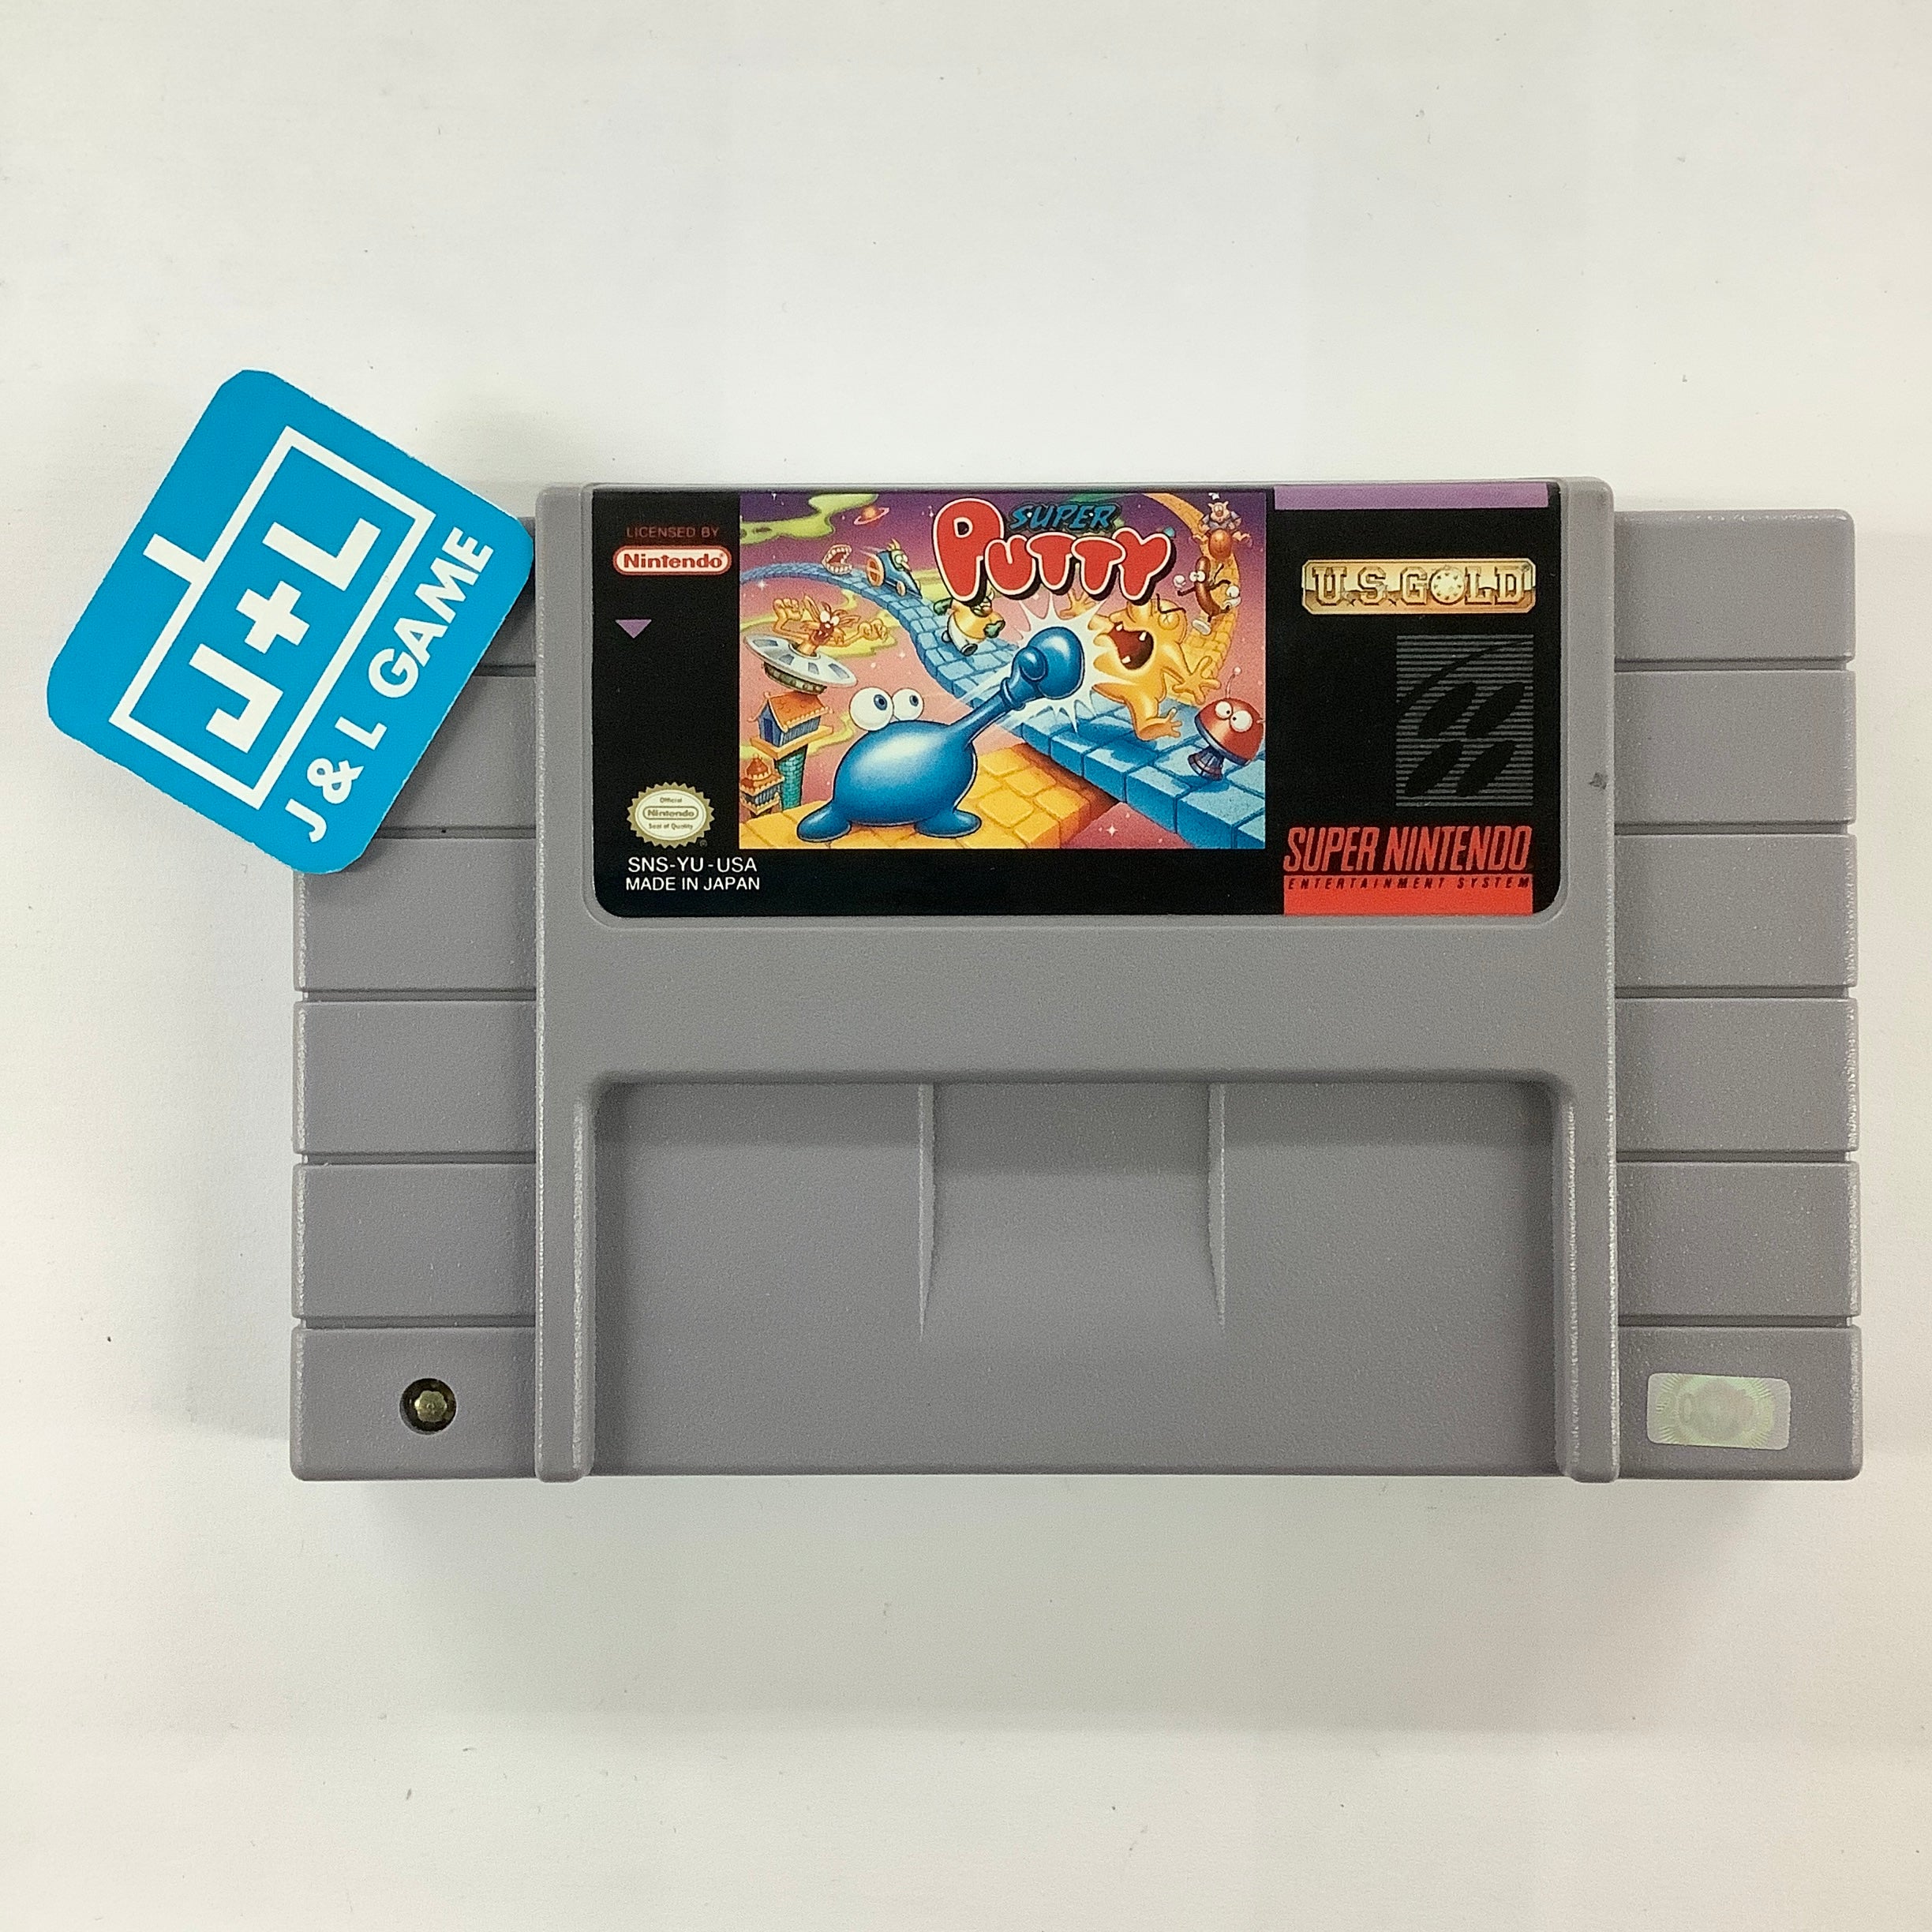 Super Putty - (SNES) Super Nintendo [Pre-Owned] Video Games U.S. Gold   